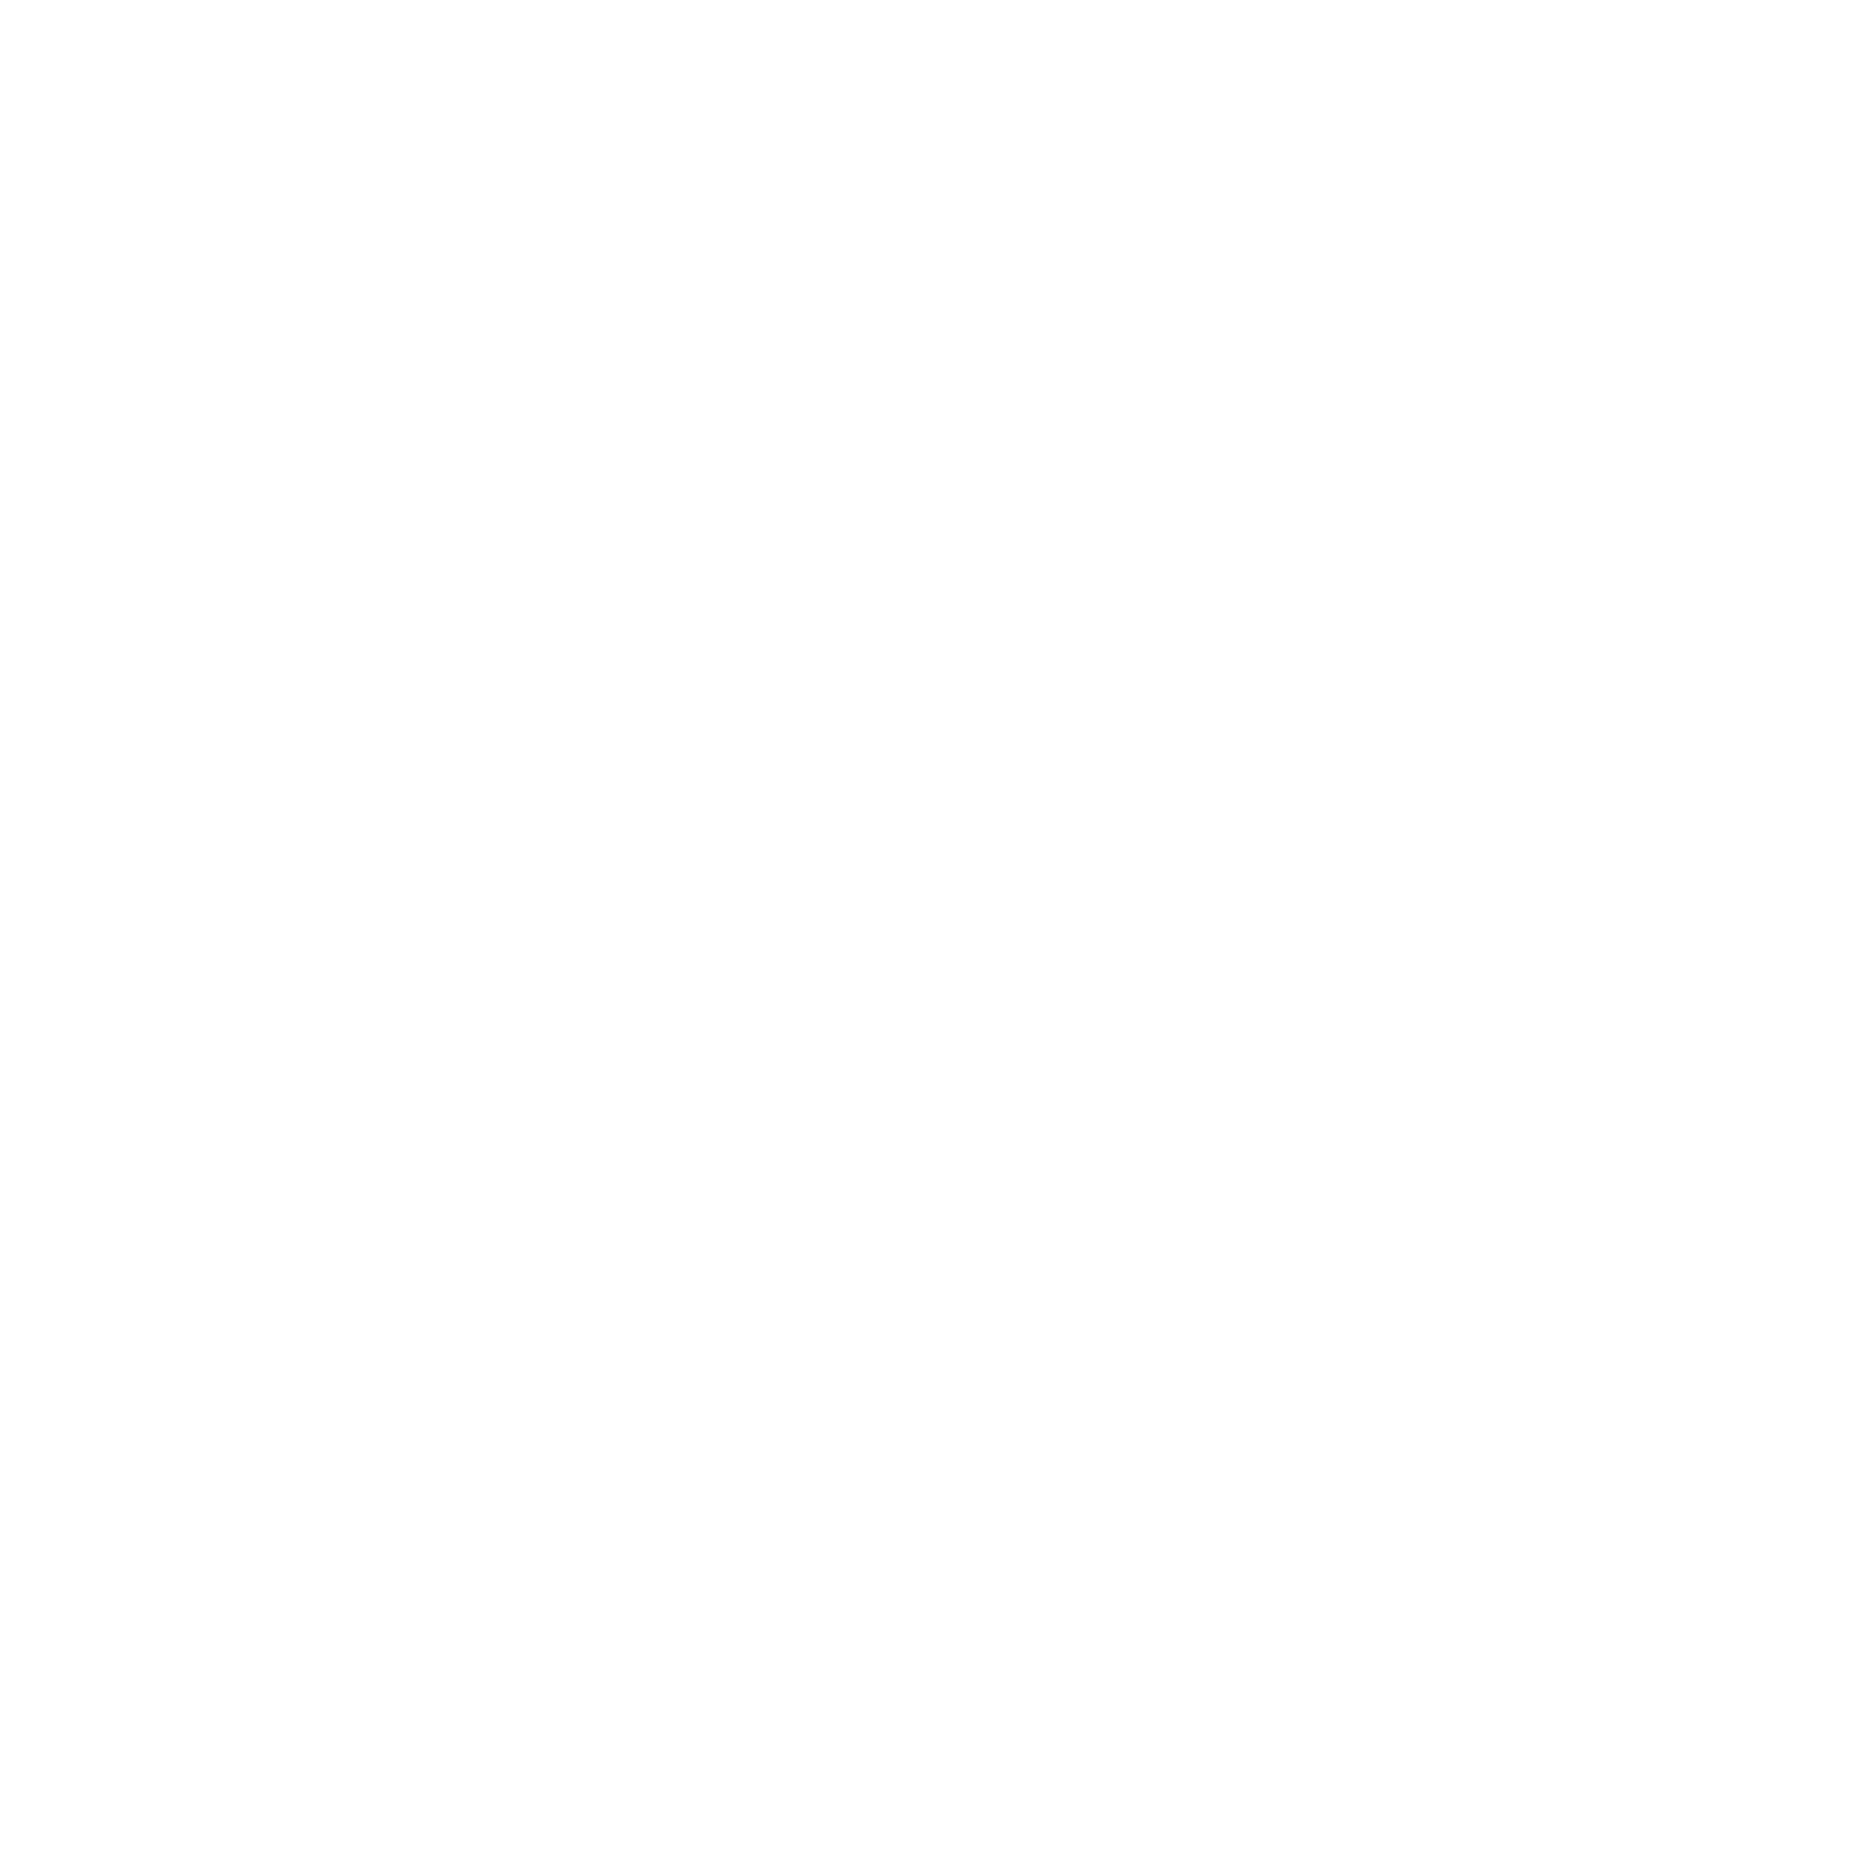 Fierce Software